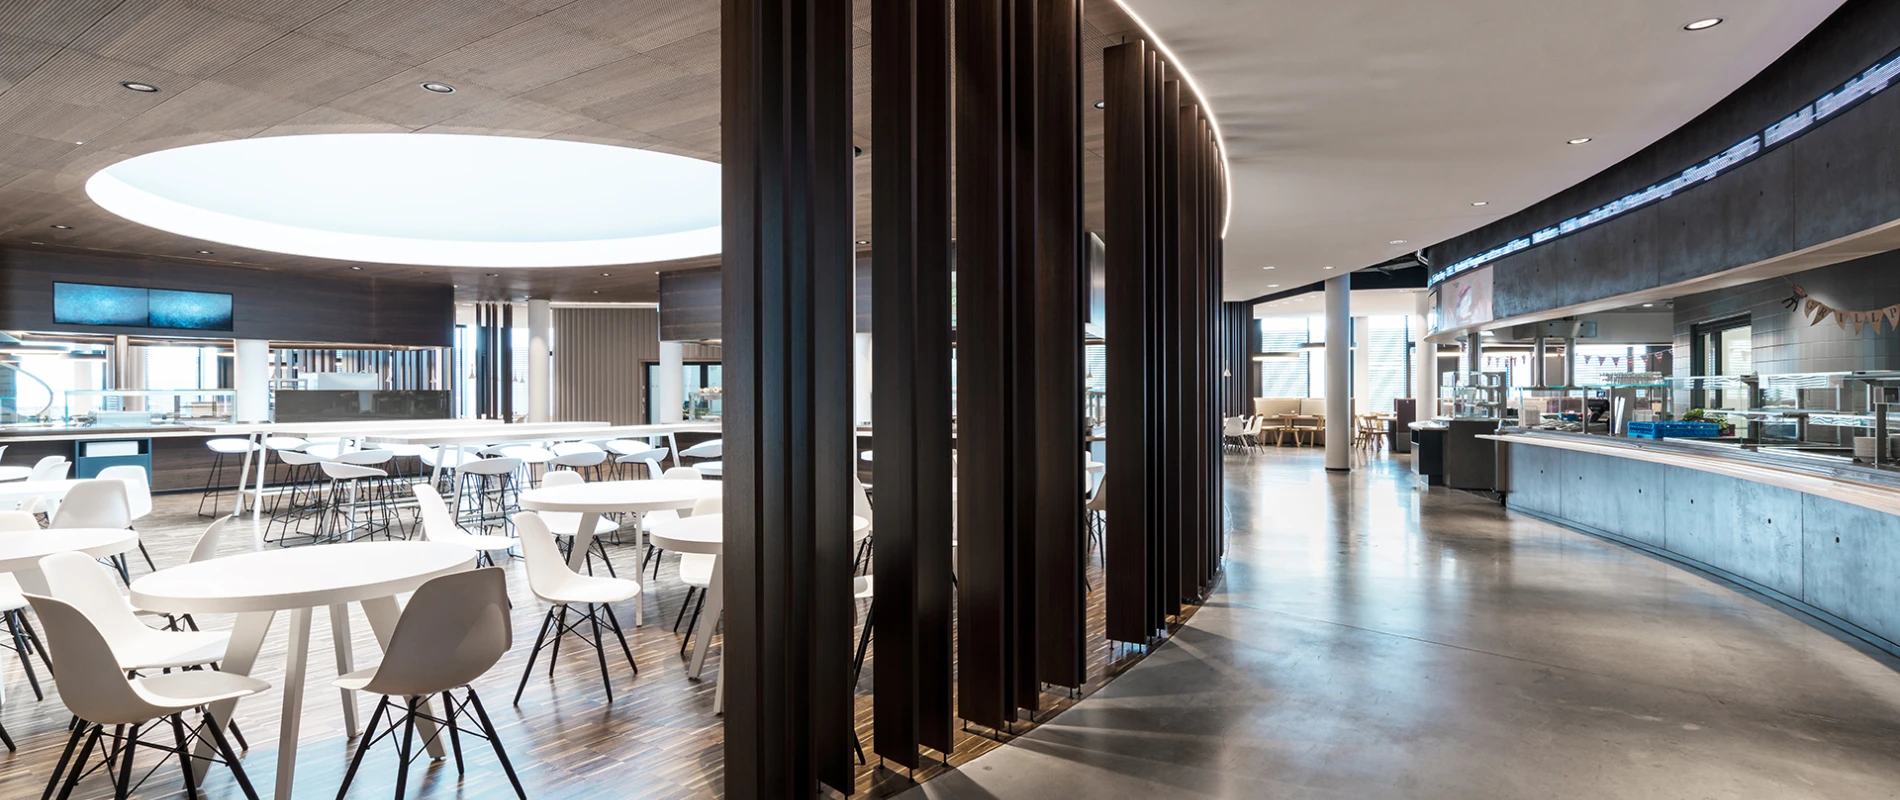 mixed-used building complex - new design - Skyloop Stuttgart - wood paneling - restaurant area